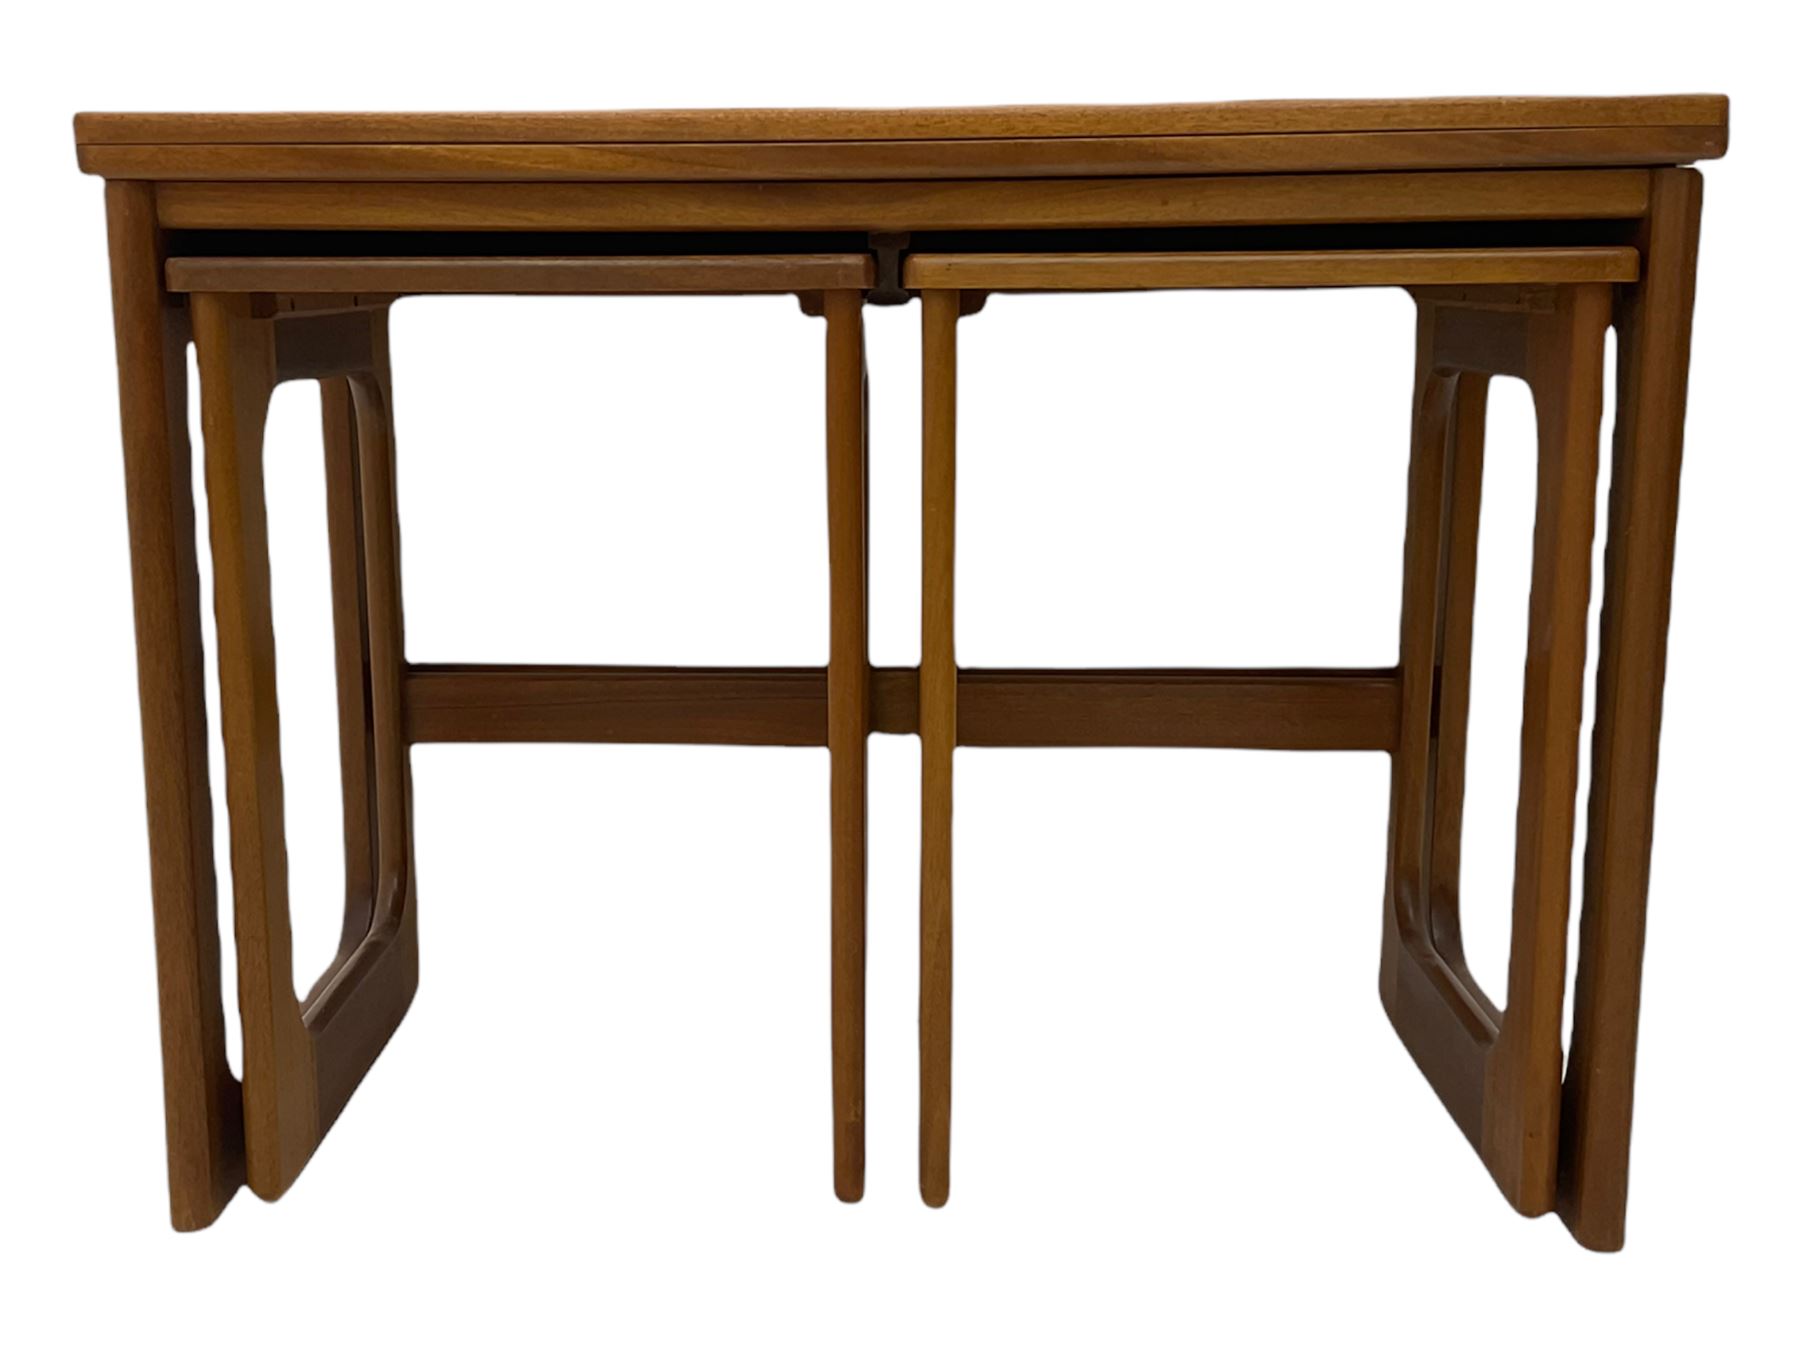 Mcintosh-Mid-20th century teak nest of three tables